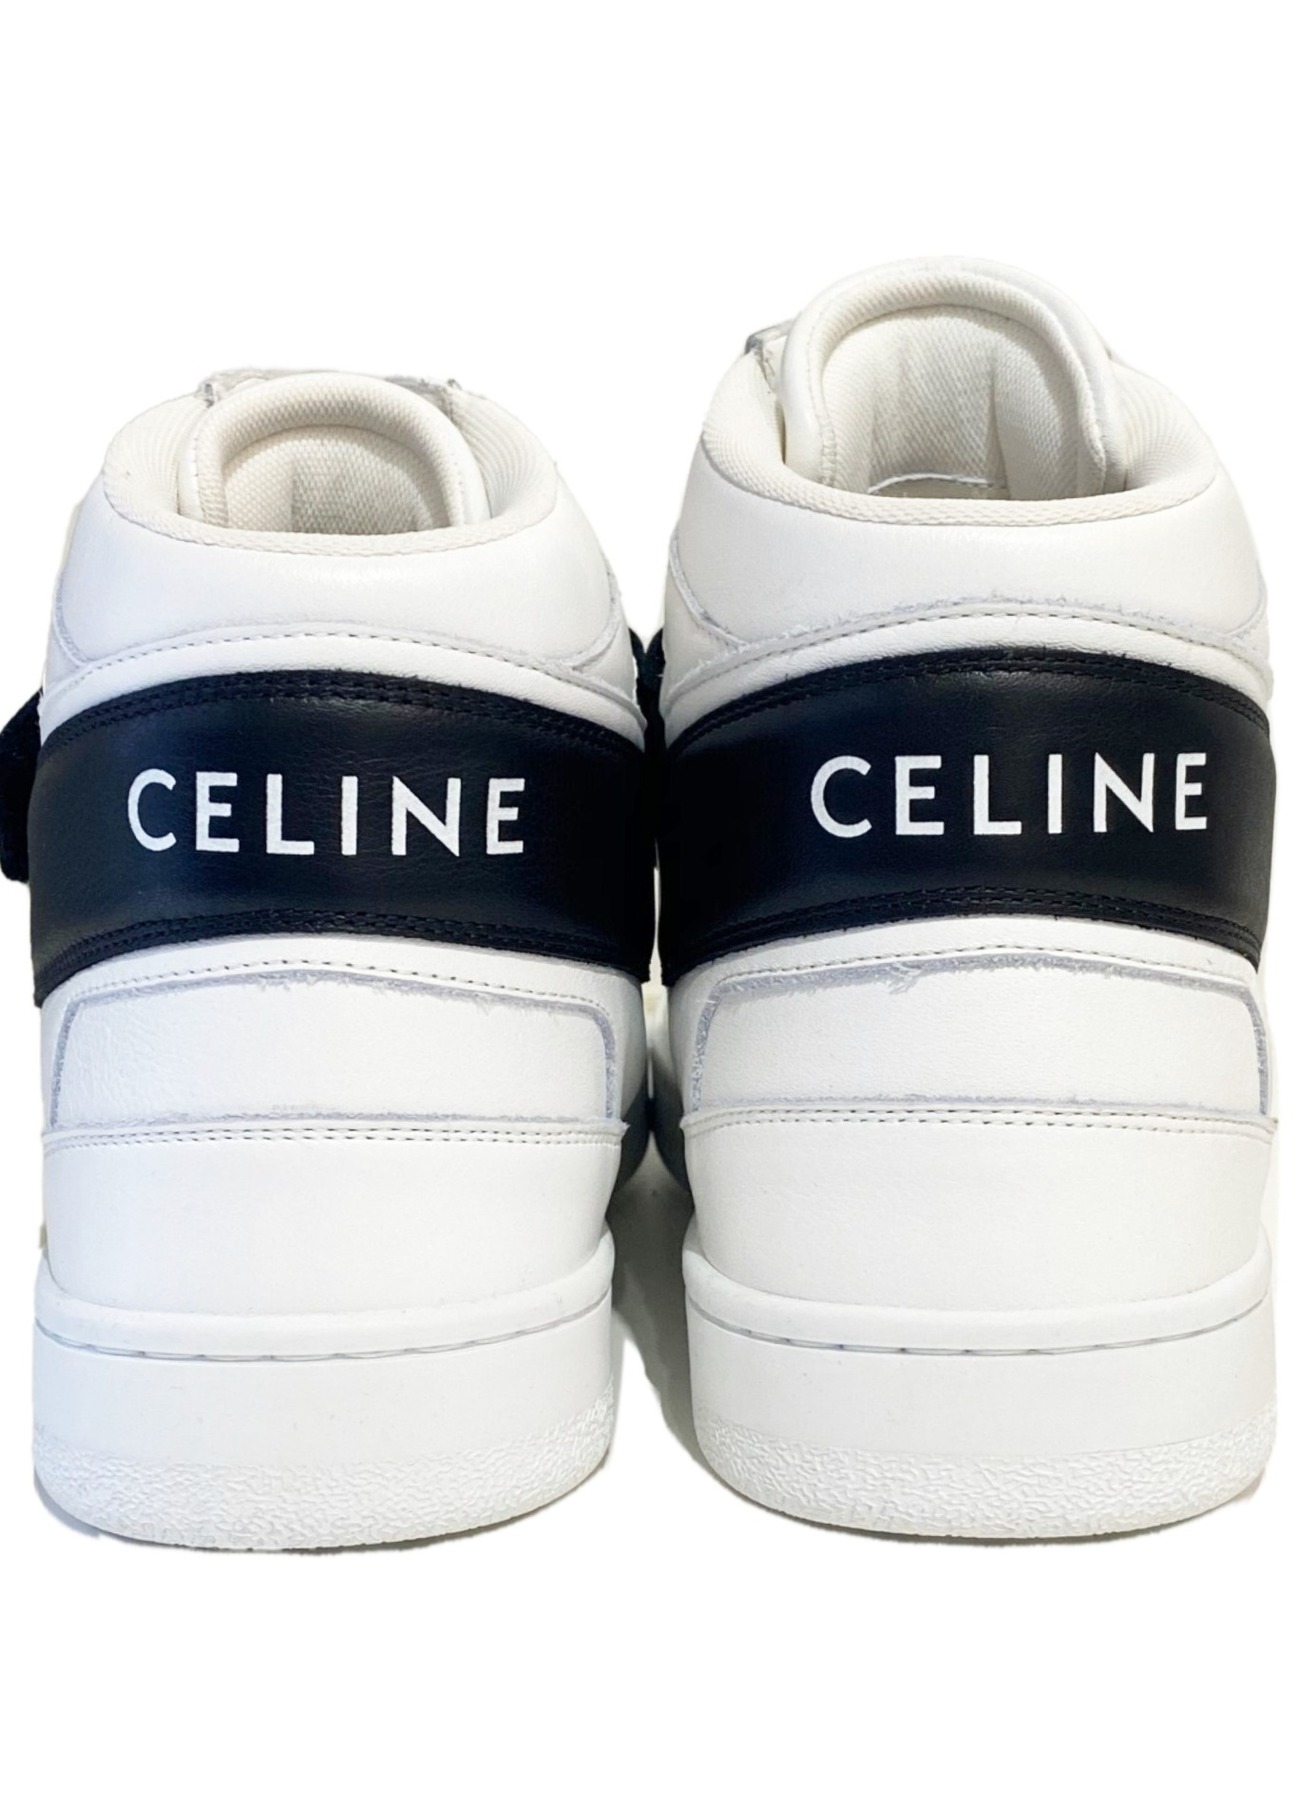 CELINE (セリーヌ) CT-03 ベルクロストラップ付き ハイスニーカー ホワイト×ブラック サイズ:42